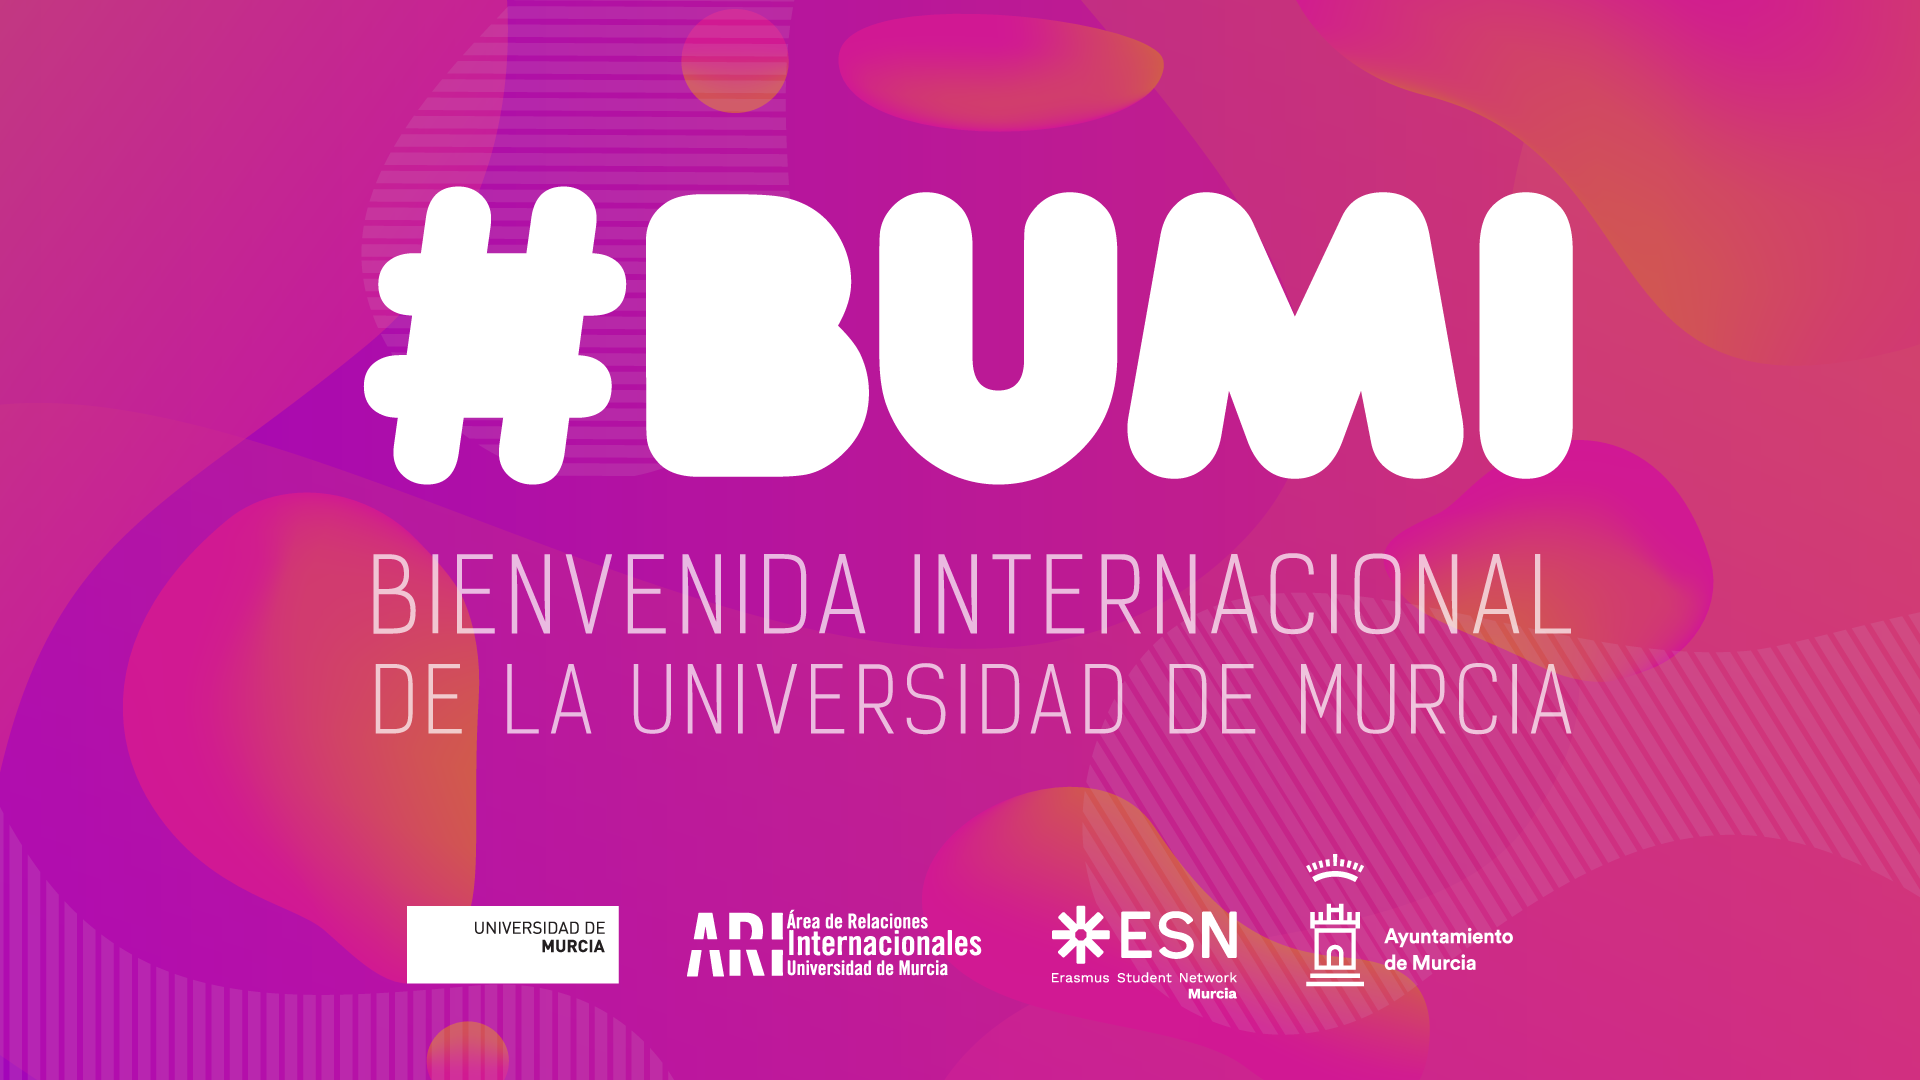 Bienvenida a los nuevos estudiantes internacionales de la Universidad de Murcia 2020-21 #BUMI